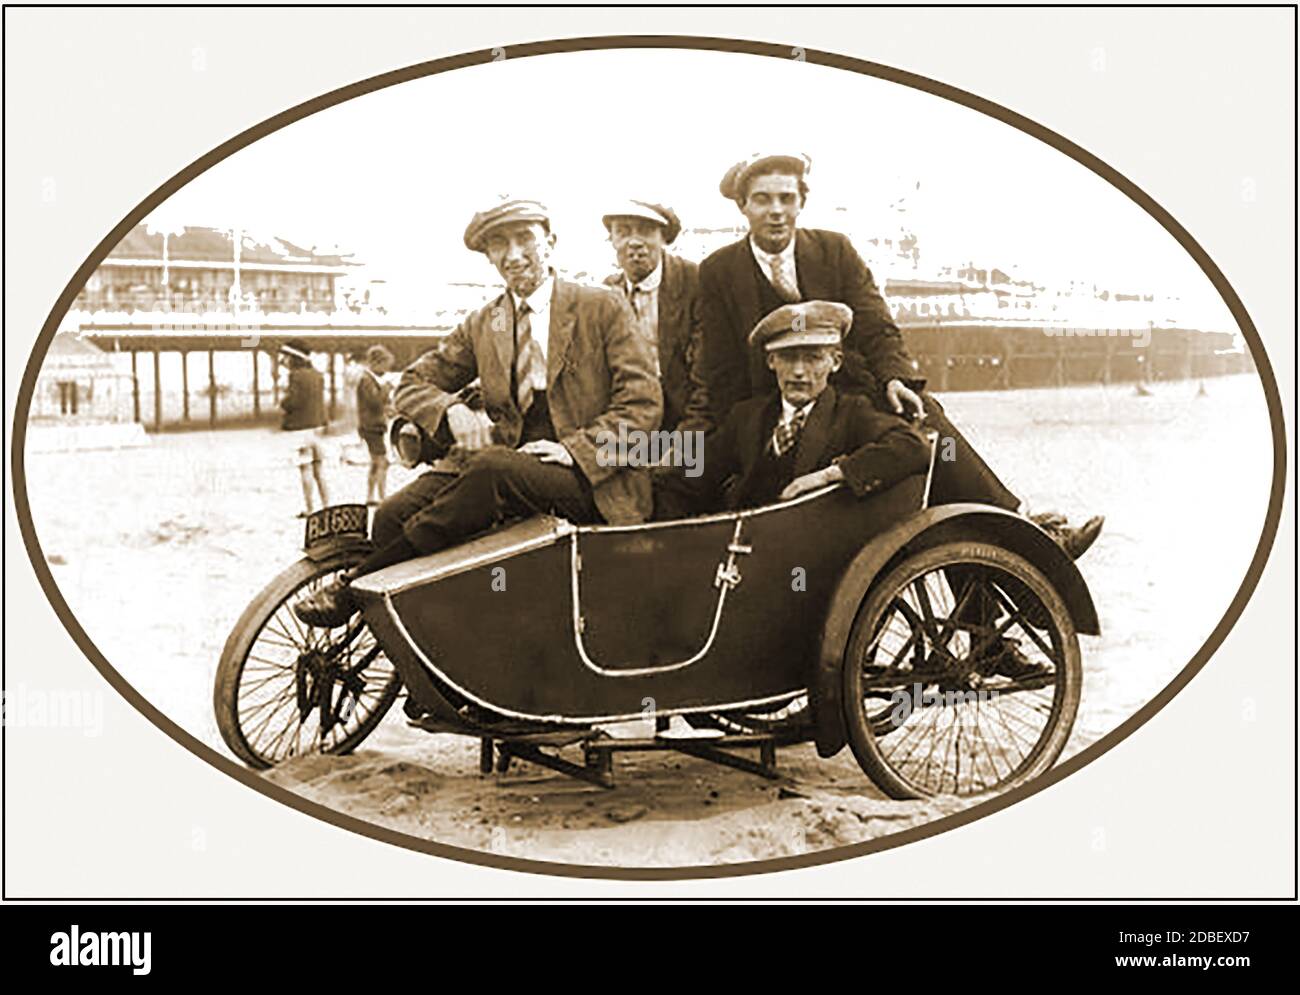 Une photographie des années 1930 / 1940 d'une moto et d'un side-car sur une plage britannique avec ses quatre occupants à toit plat. Banque D'Images